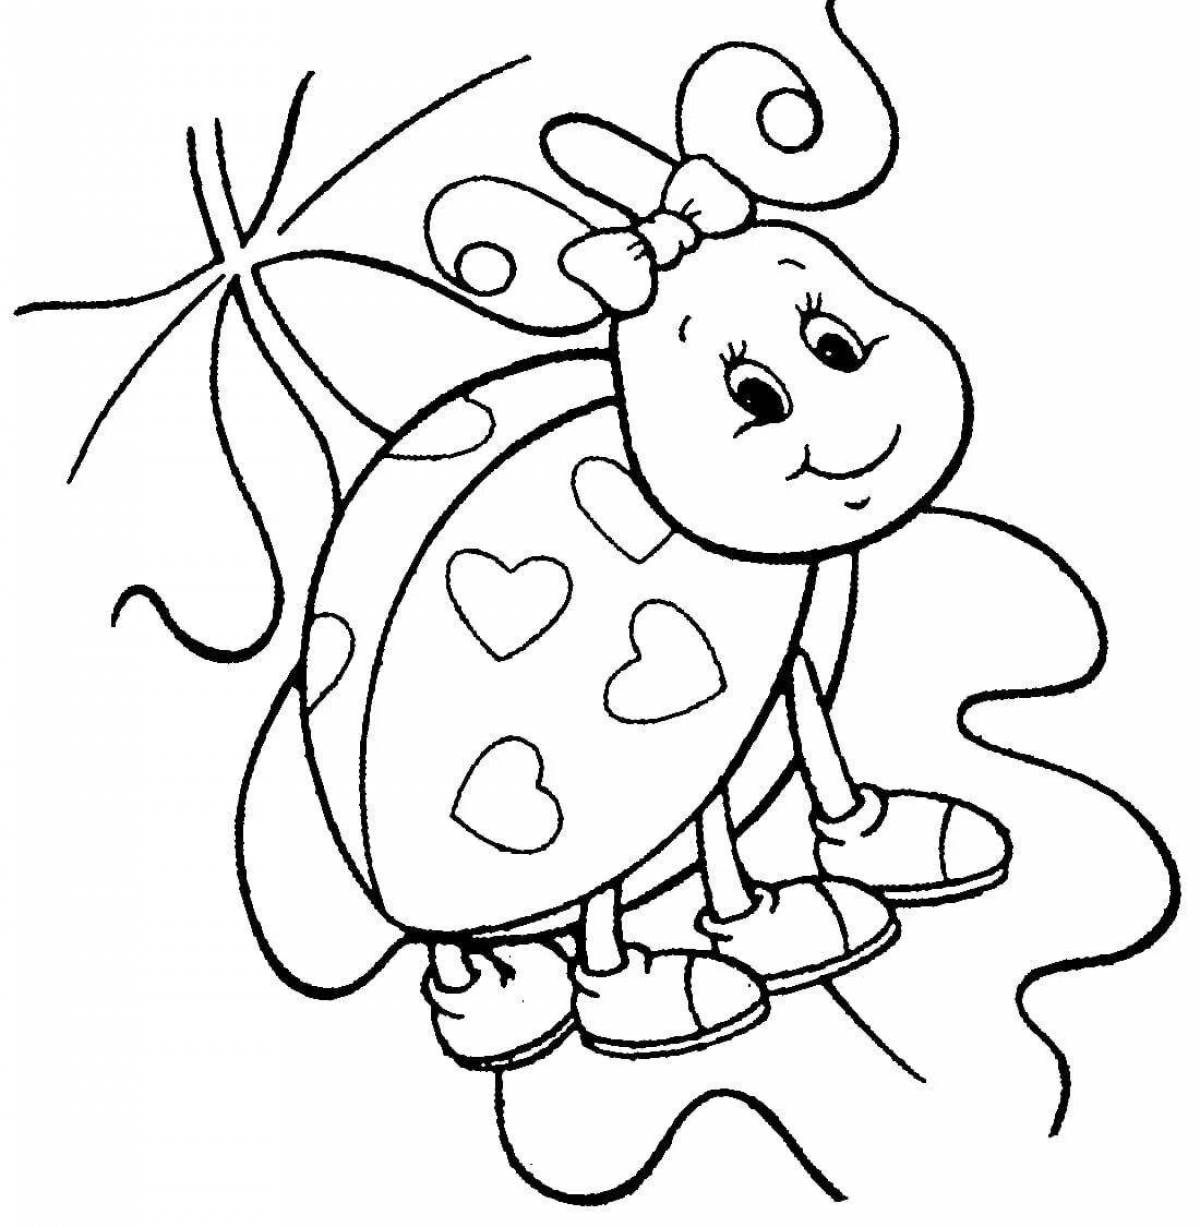 Увлекательная раскраска божьей коровки для детей 6-7 лет